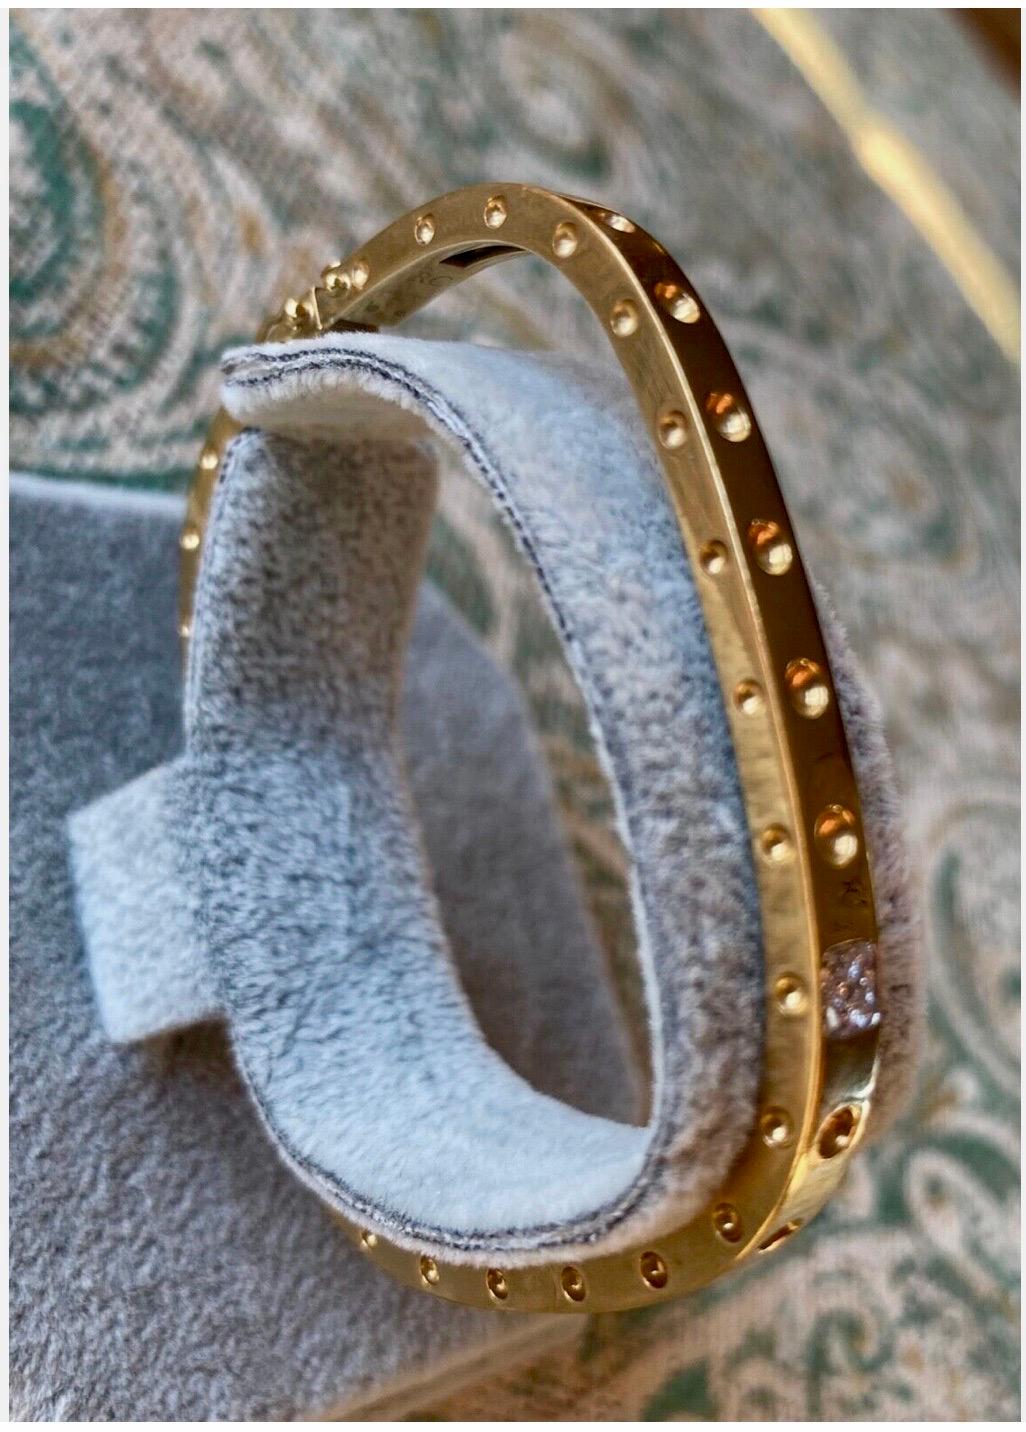 Roberto Coin Bracelet Version eines Pois Moi Armbands.

 Roberto Coin 18k Gelbgold 

Pois Moi Diamant-Armreif

Original  Box 

Nachlass/ Gebraucht/ Ausgezeichneter Zustand.

0,07 Diamant

Größe bis 6,5